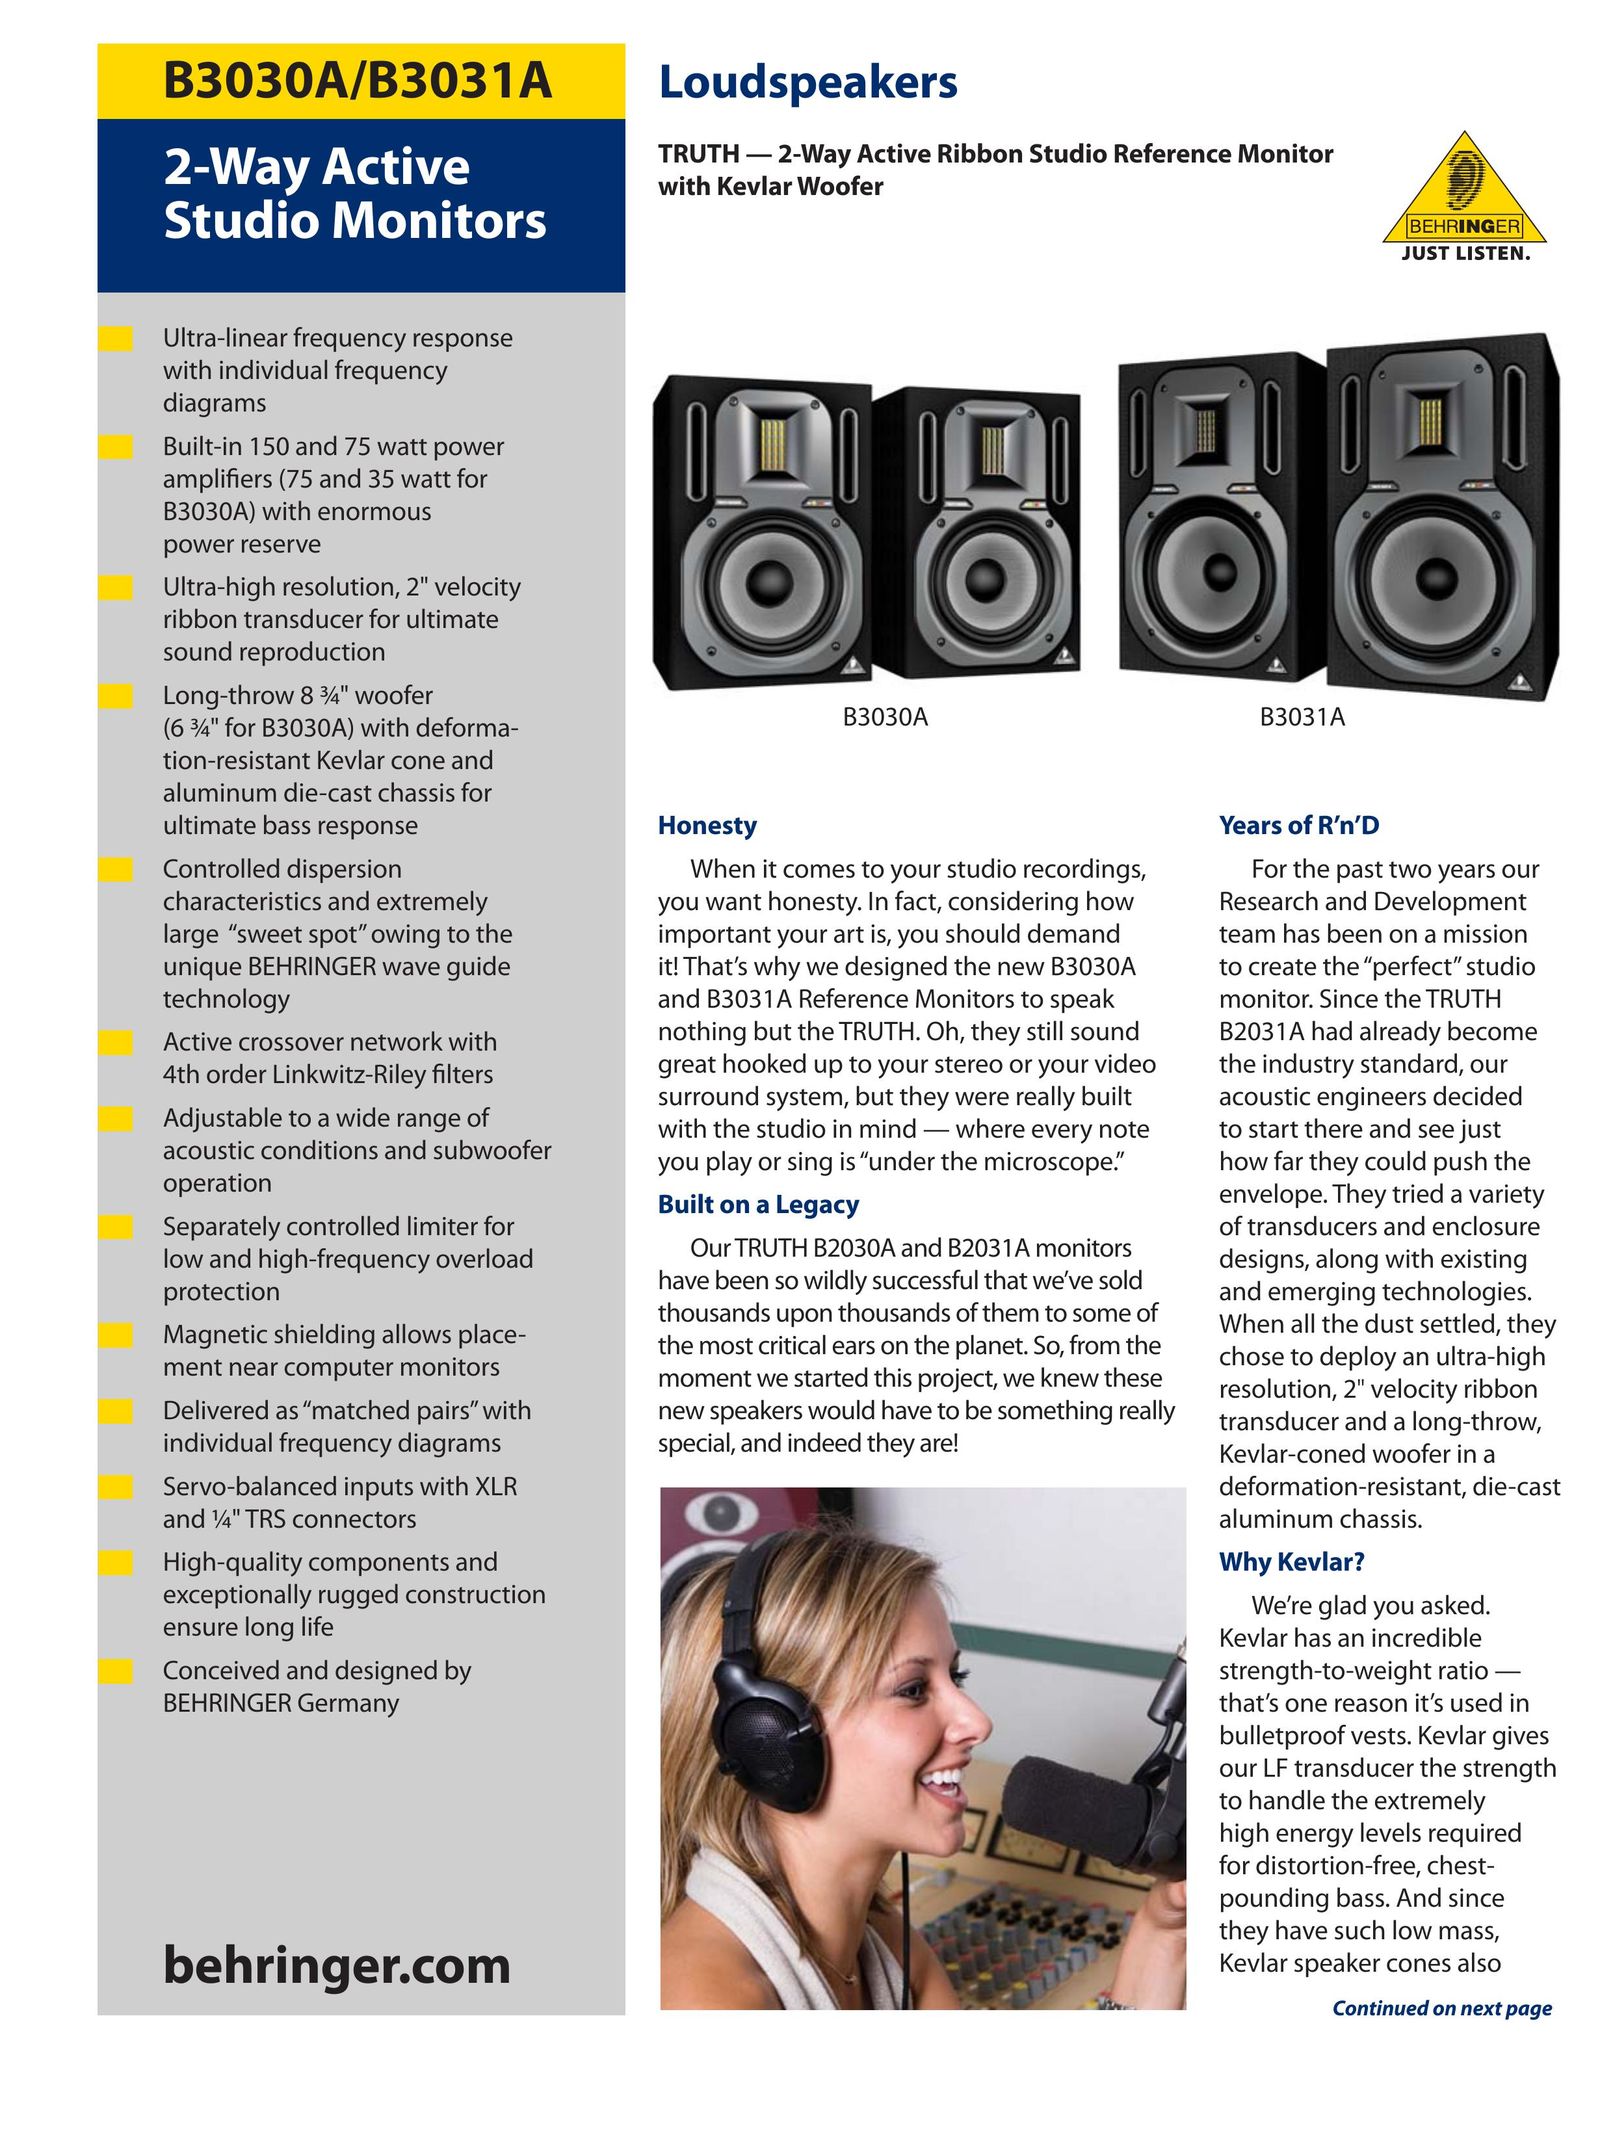 Behringer B3031A Speaker User Manual